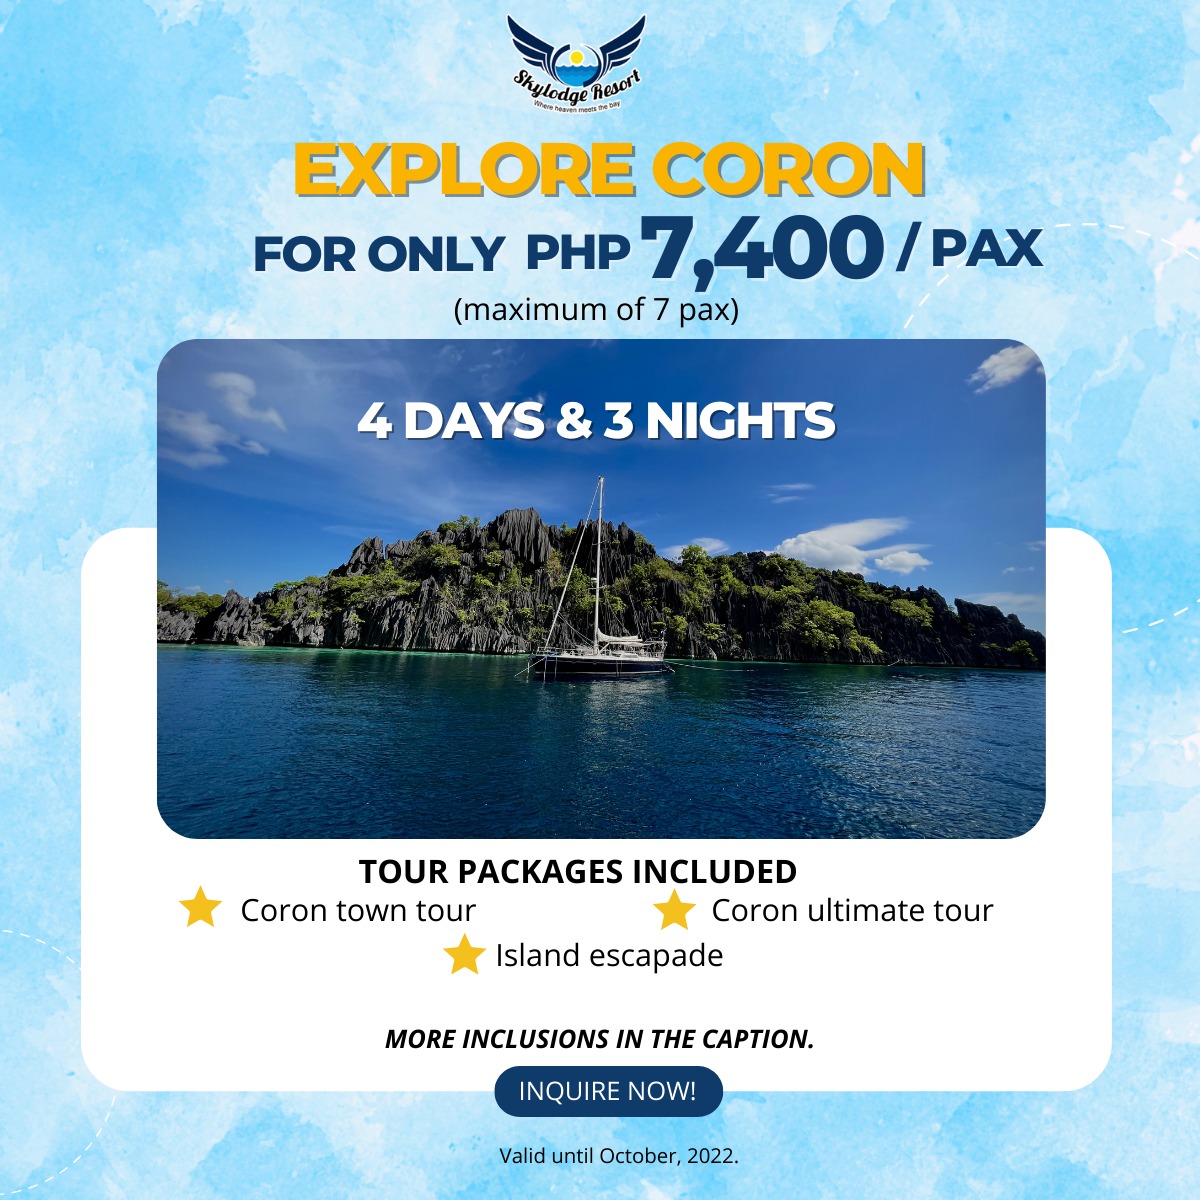 coron palawan tour package 4 days 3 nights